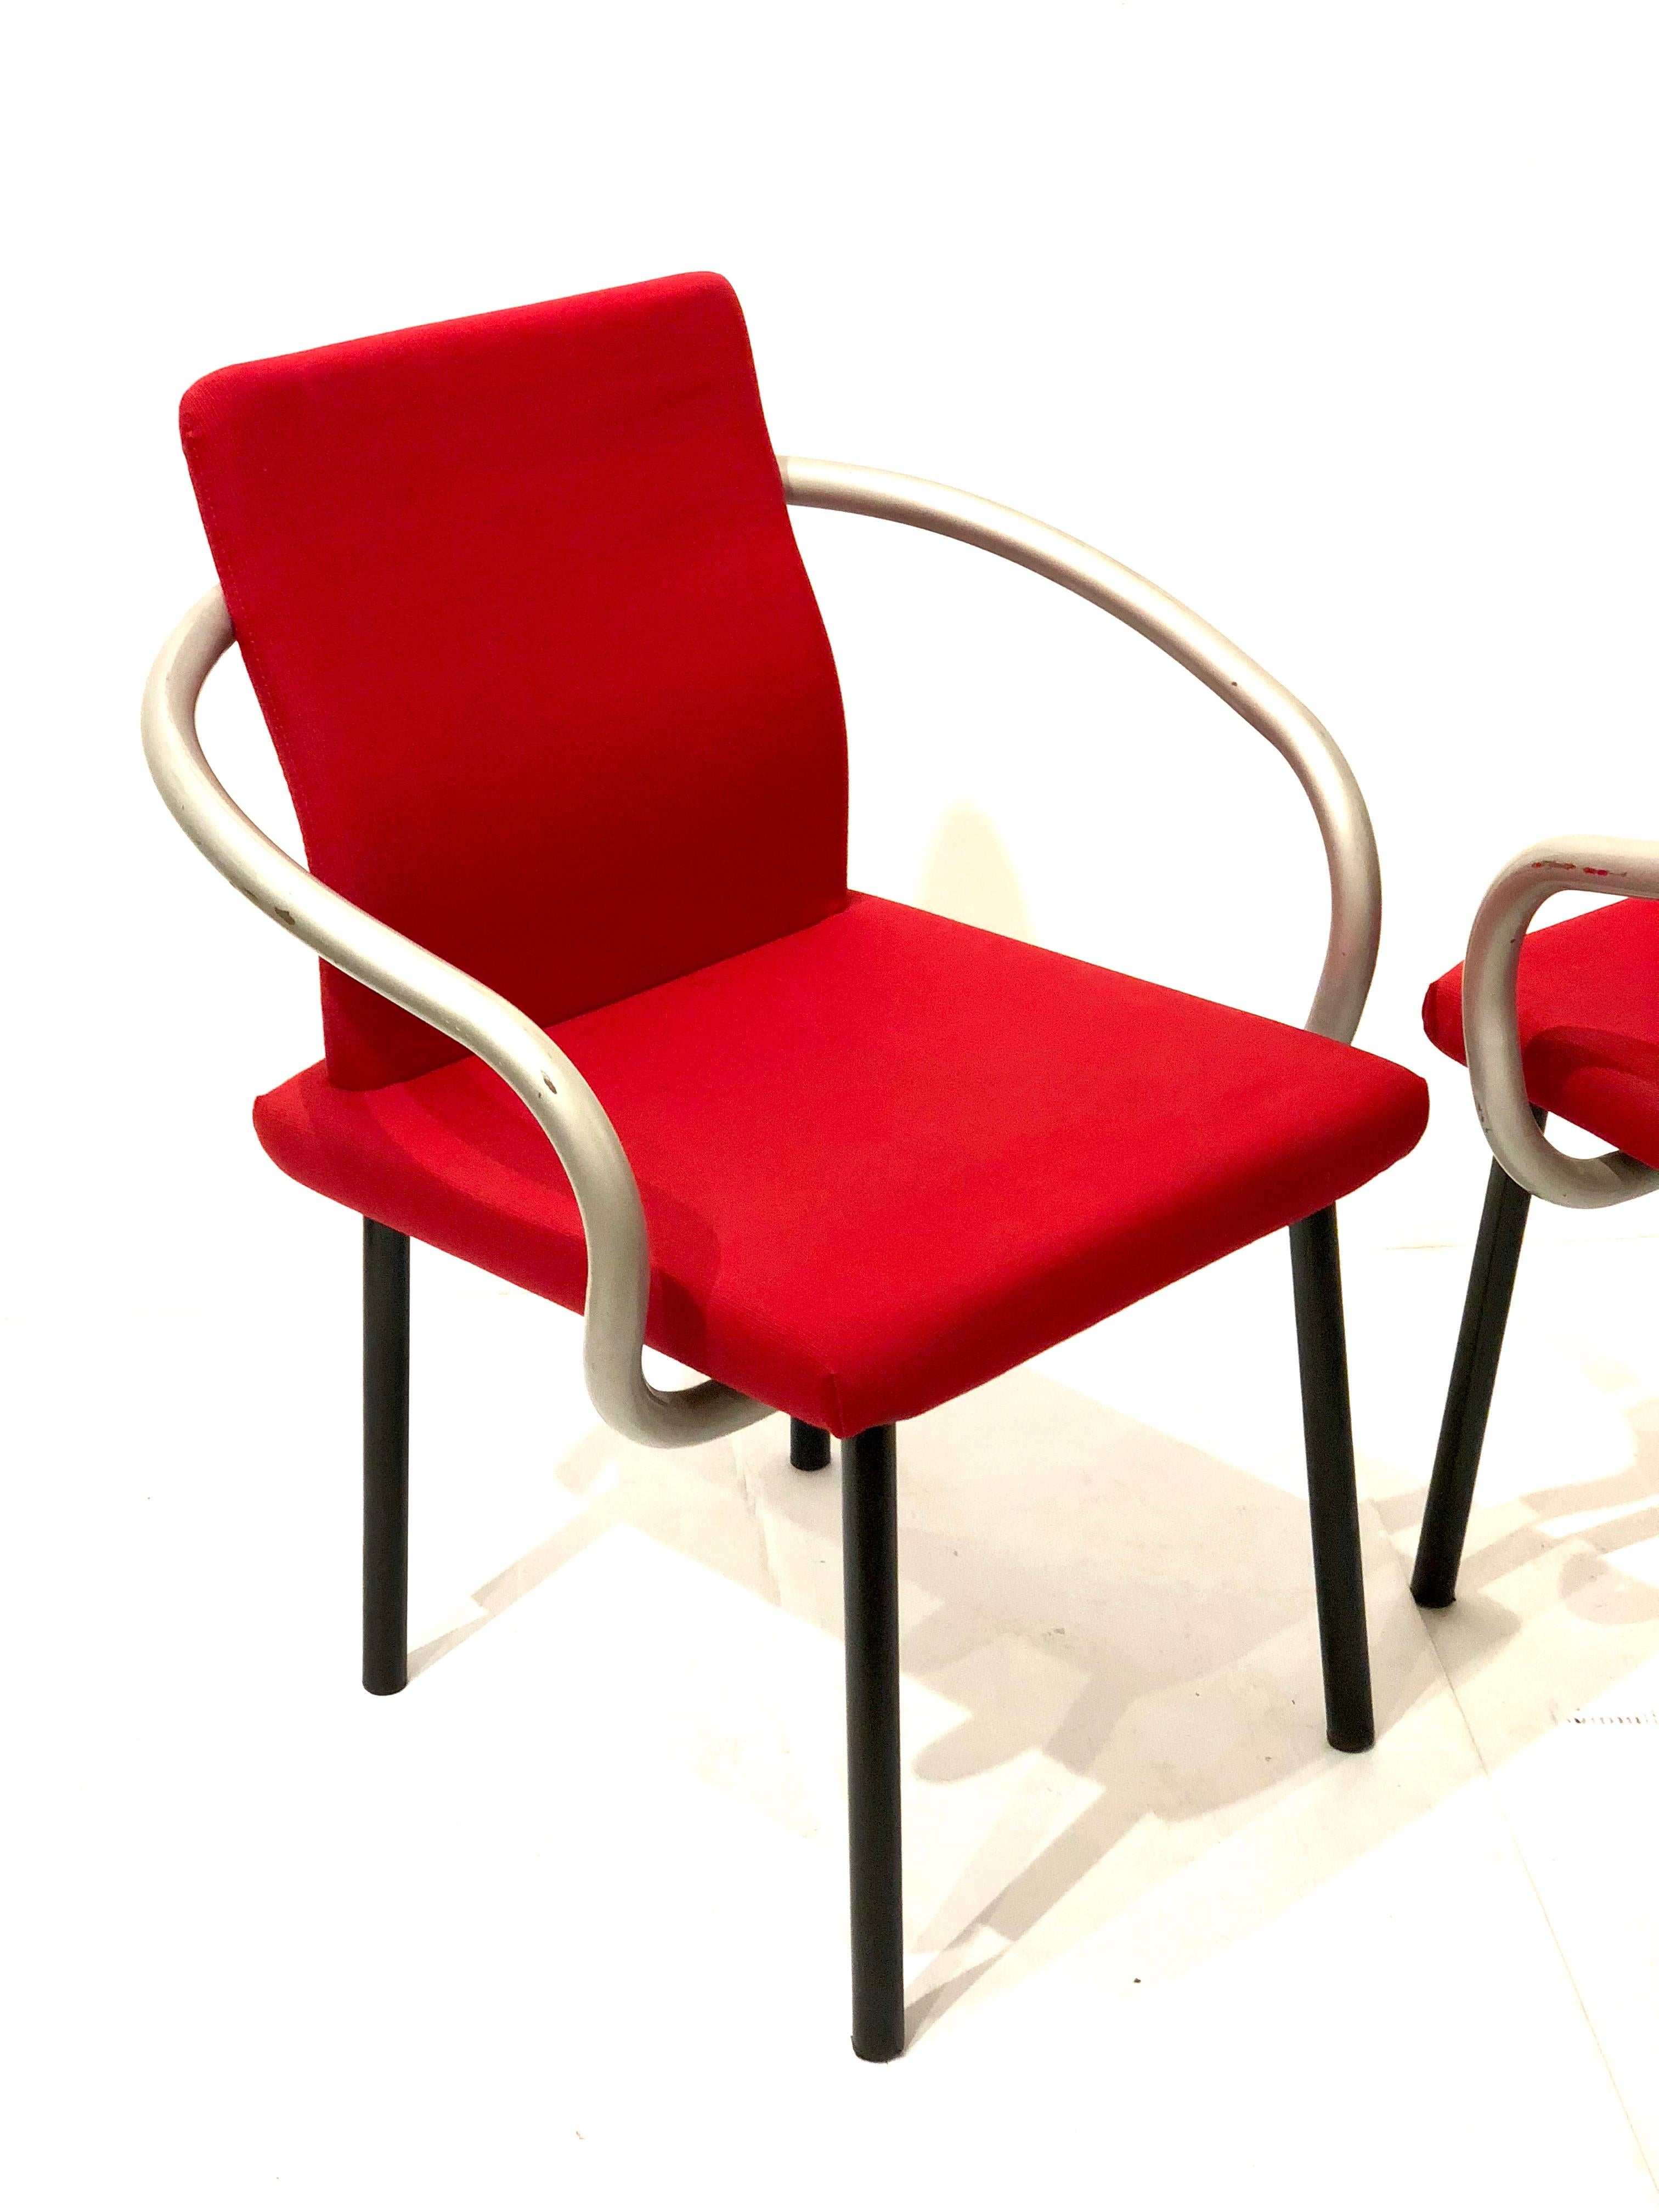 Bel ensemble de quatre chaises Mandarin dessinées par Sottsass pour Knoll, en tissu rouge sur des pieds tubulaires en mousse émaillée noire et des accoudoirs en piqué argenté, simples et élégantes par ce maître architecte.